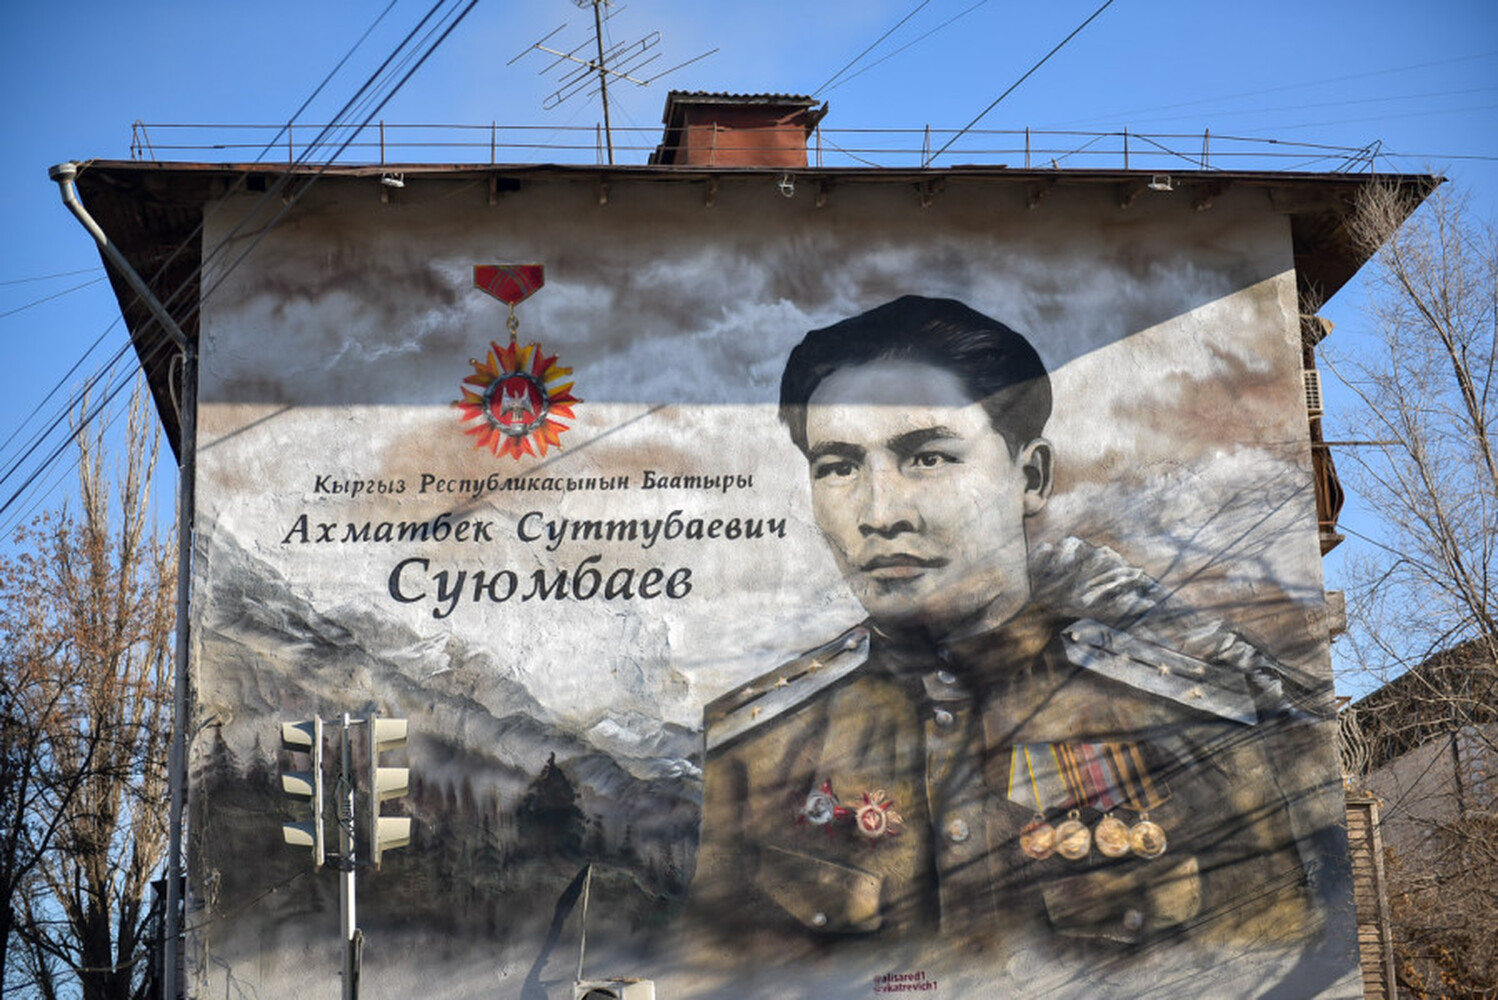 В Бишкеке появился мурал, посвященный Ахматбеку Суюмбаеву, — фото — Today.kg